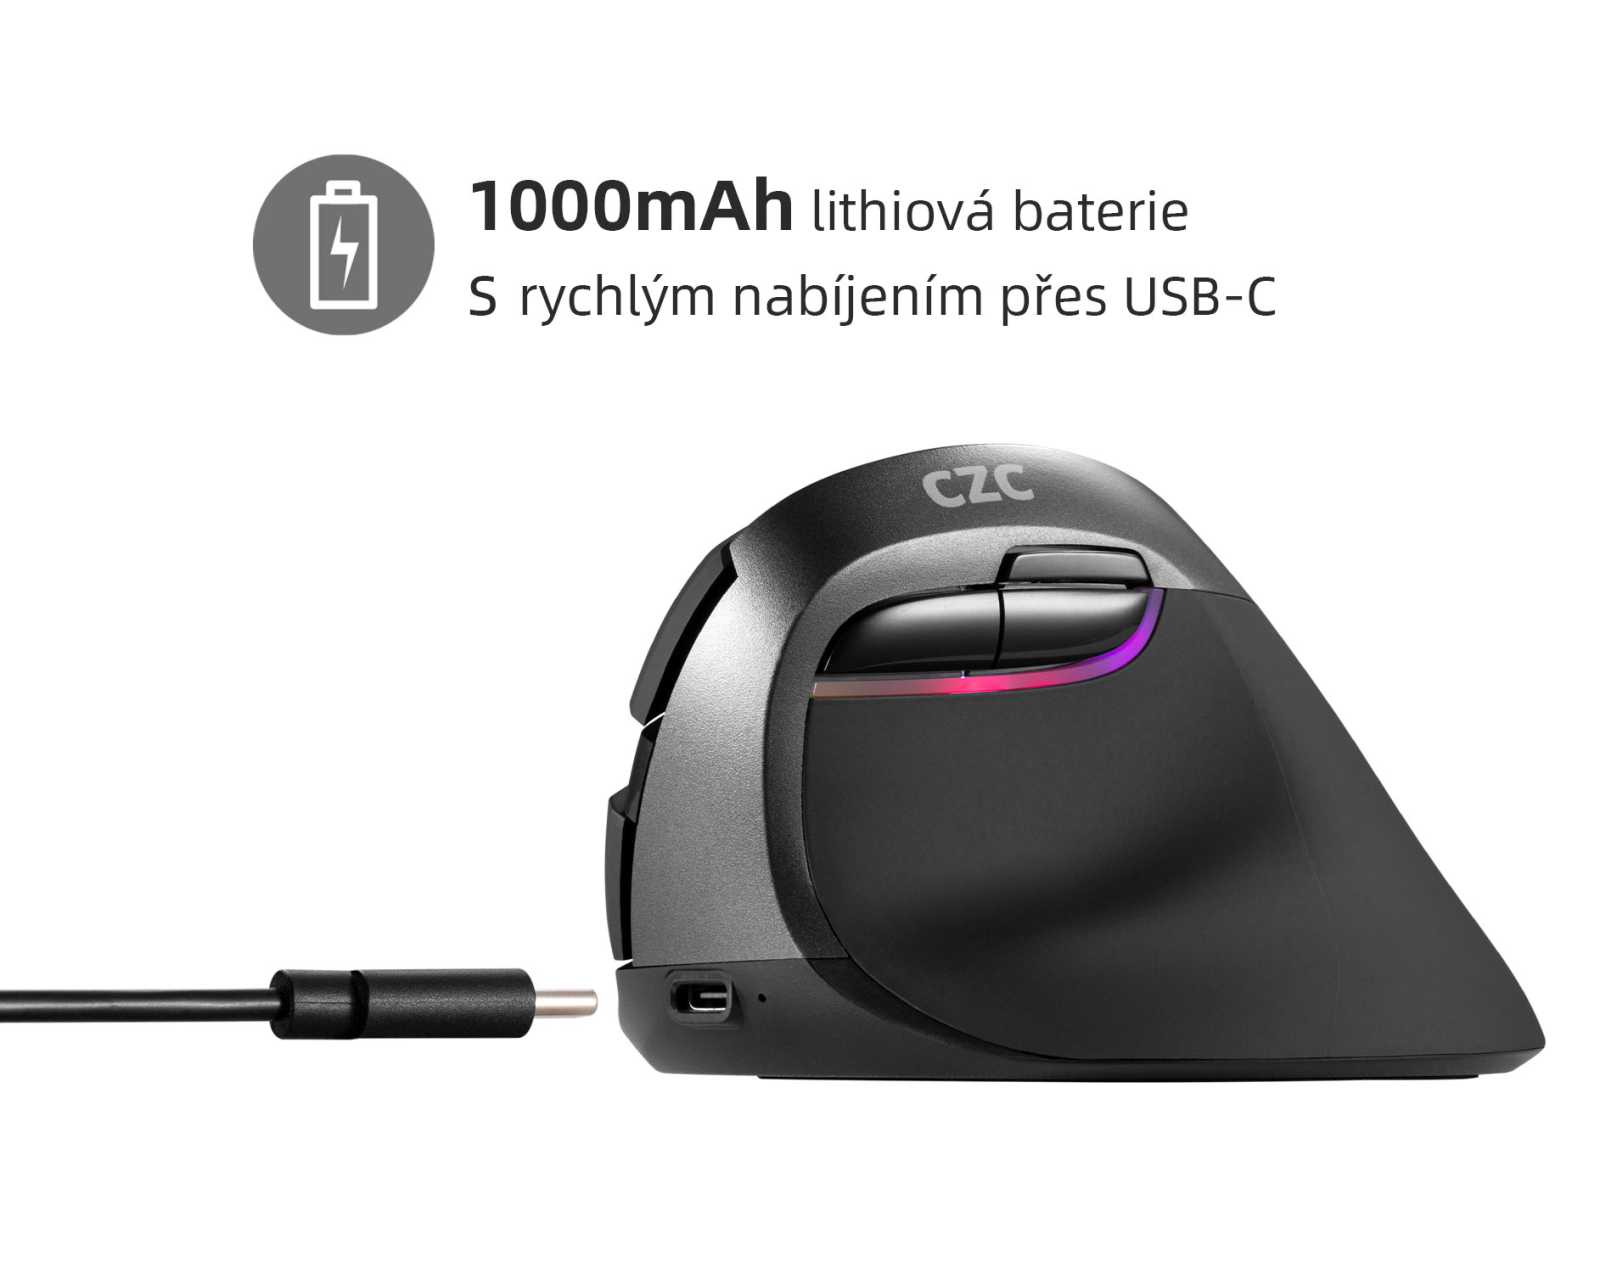 TIP: Levná ergonomická myš Kite One od CZC překvapuje hodnocením 94 %!